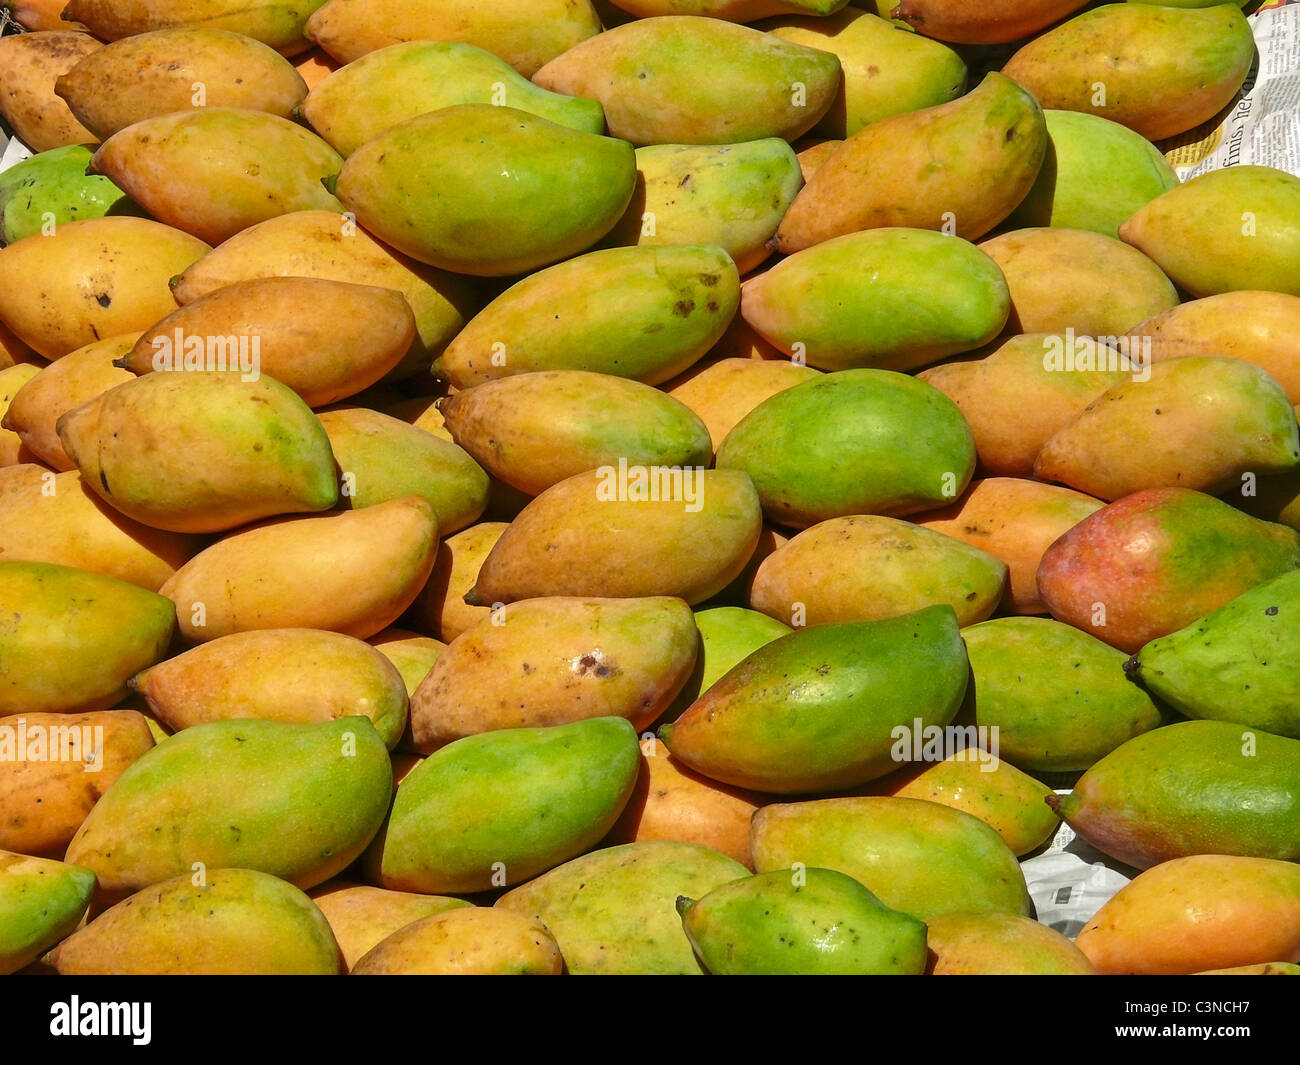 Fruits, Mangifera indica L, Totapuri Mangoes, India Stock Photo